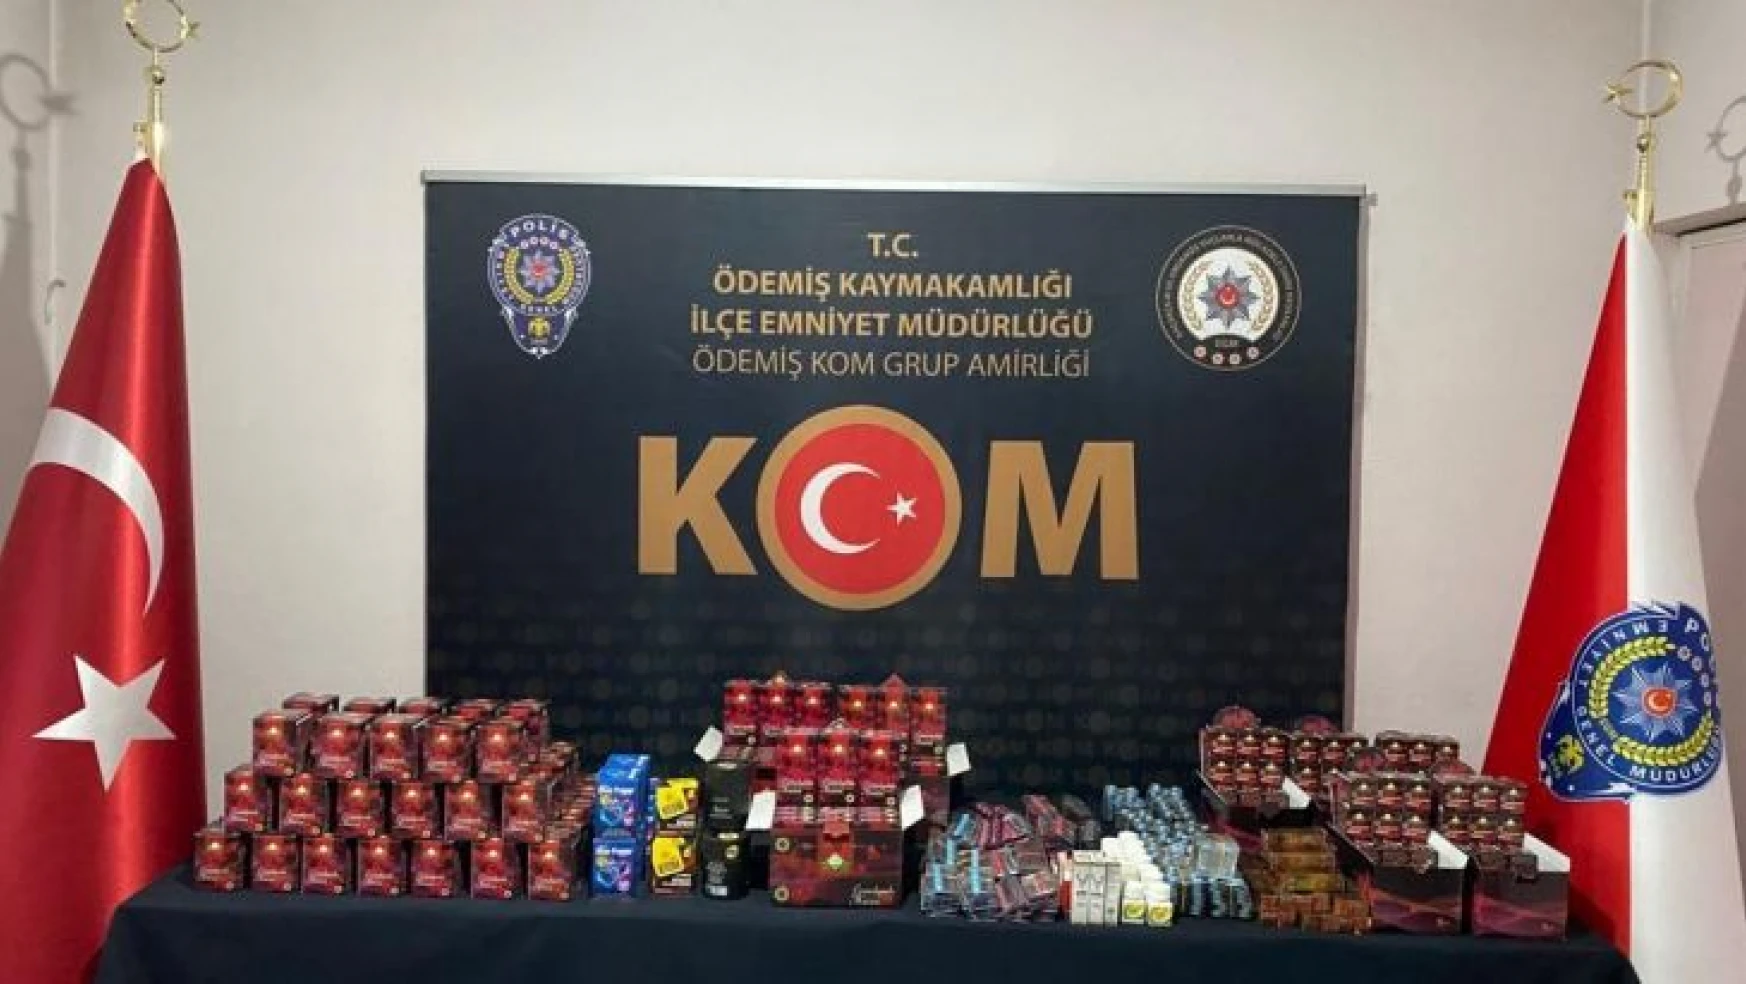 İzmir'de cinsel içerikli ürün operasyonu